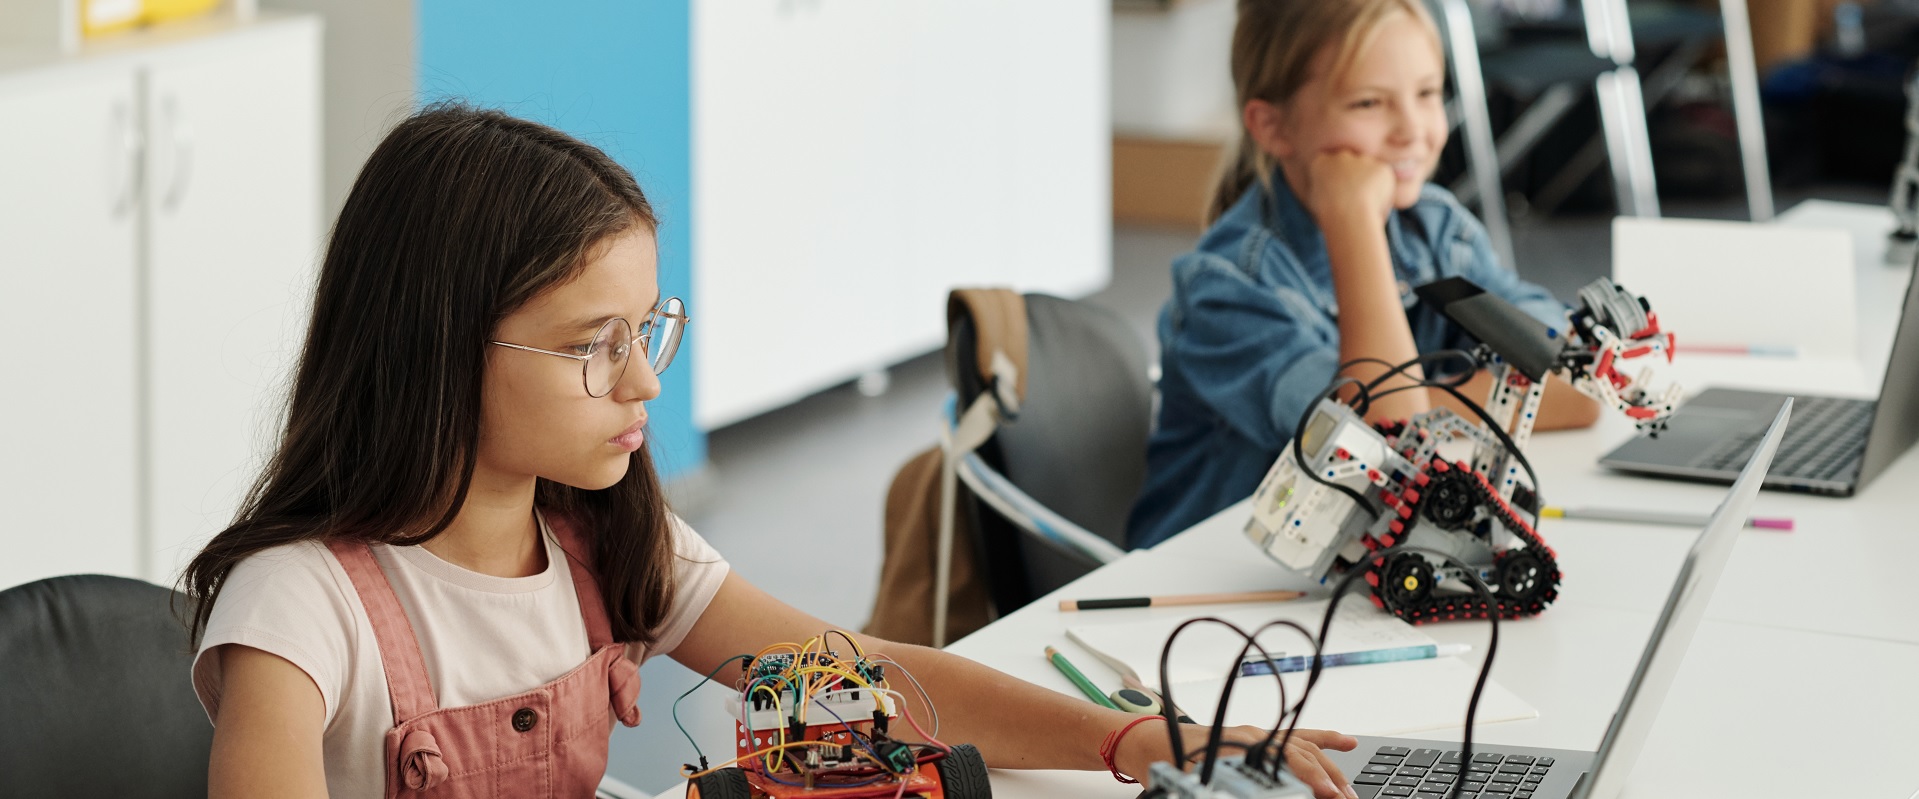 Der Mädchen-Zukunftstag gibt praktische Einblicke in technische und naturwissenschaftliche Berufe.